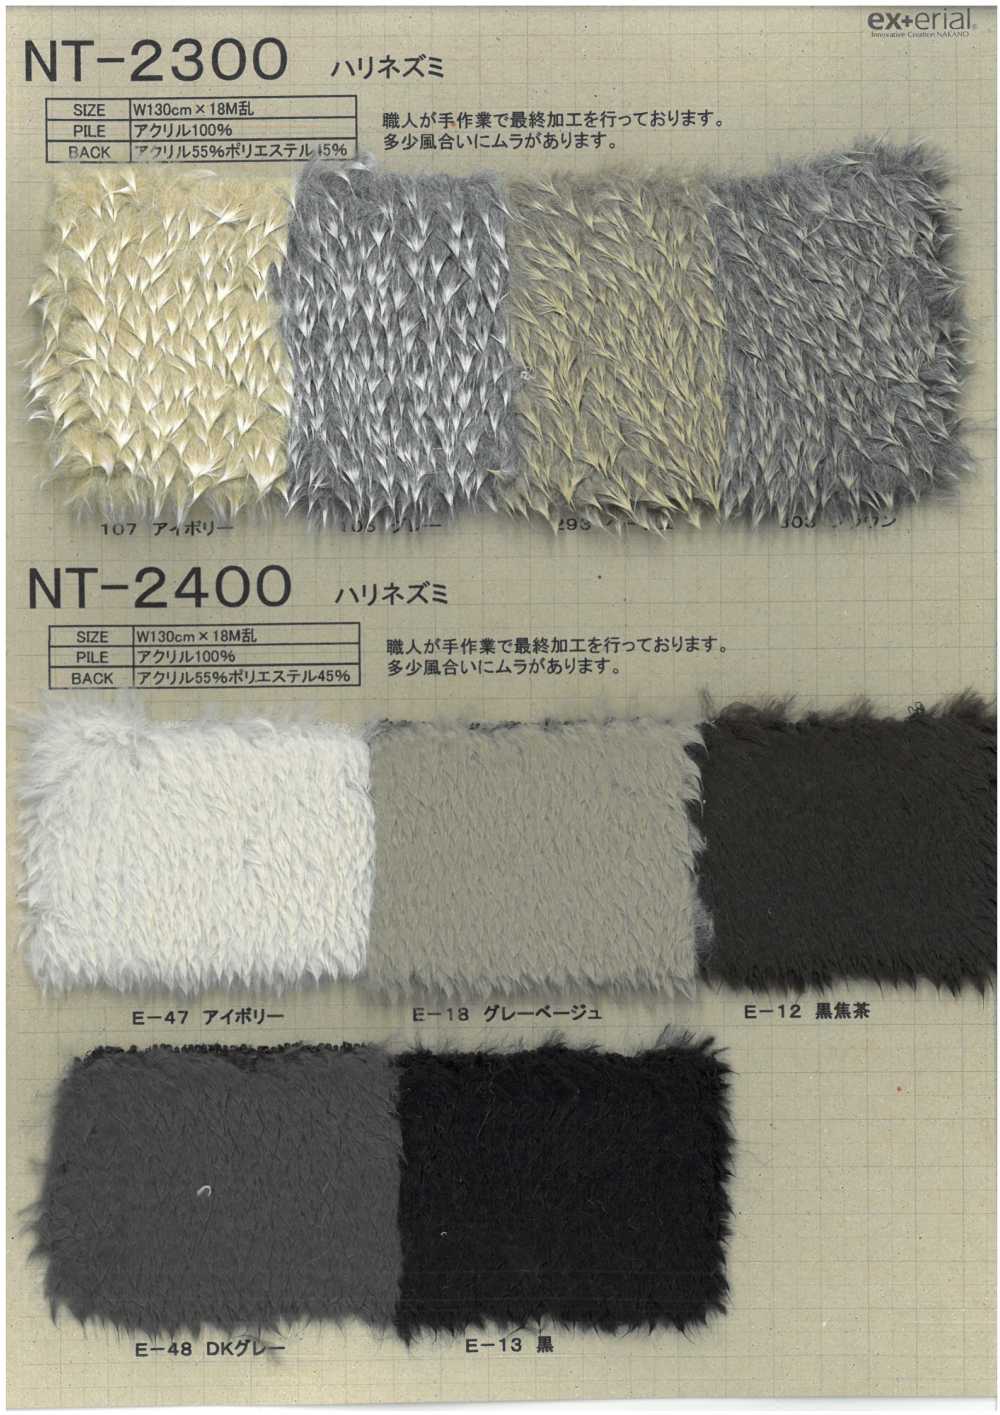 NT-2300 工艺毛皮【刺猬】[面料] 中野袜业